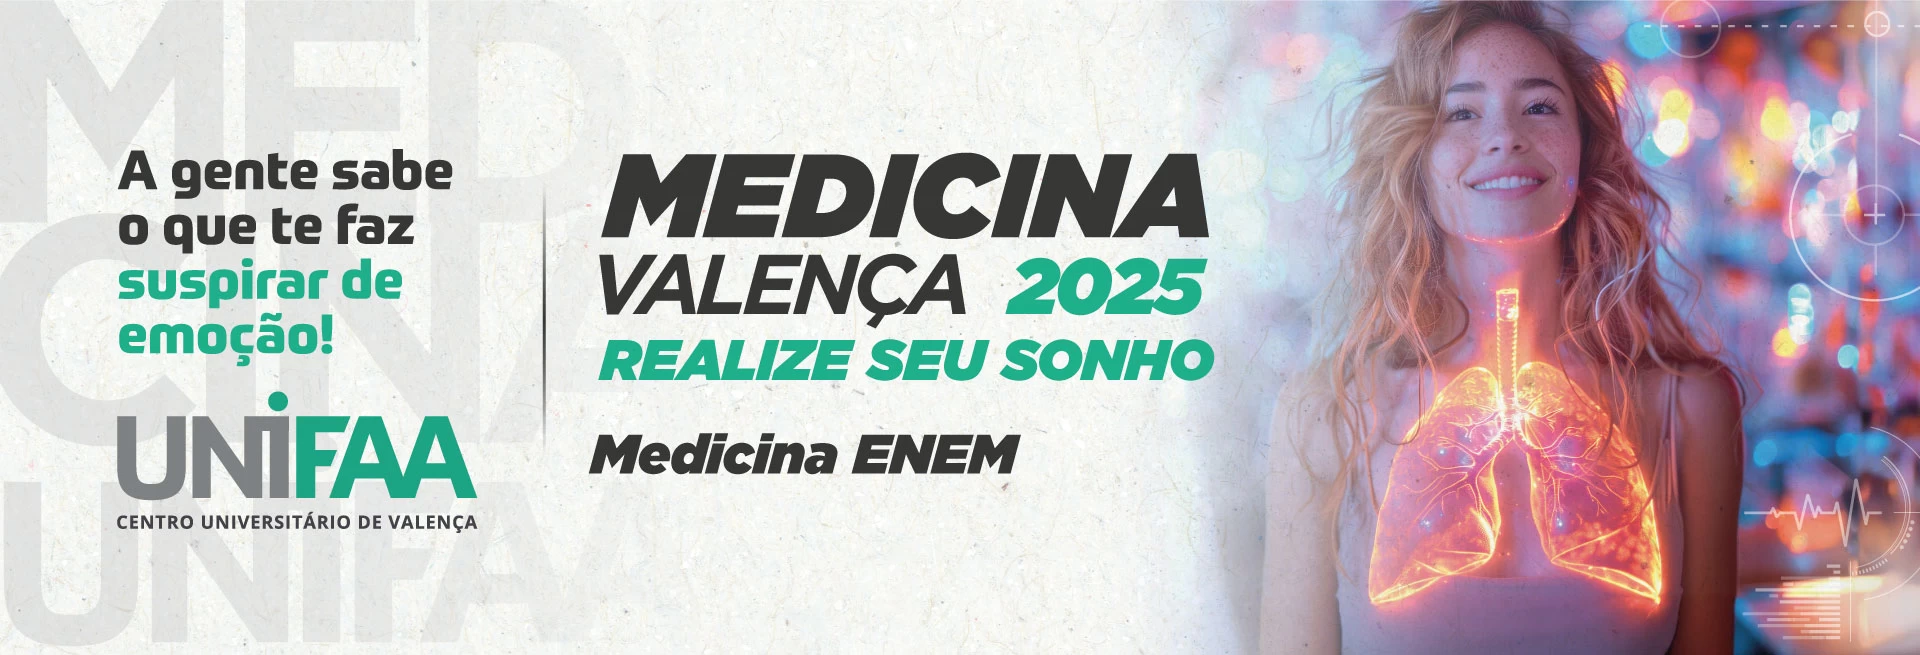 MEDICINA 2025.1 ENEM